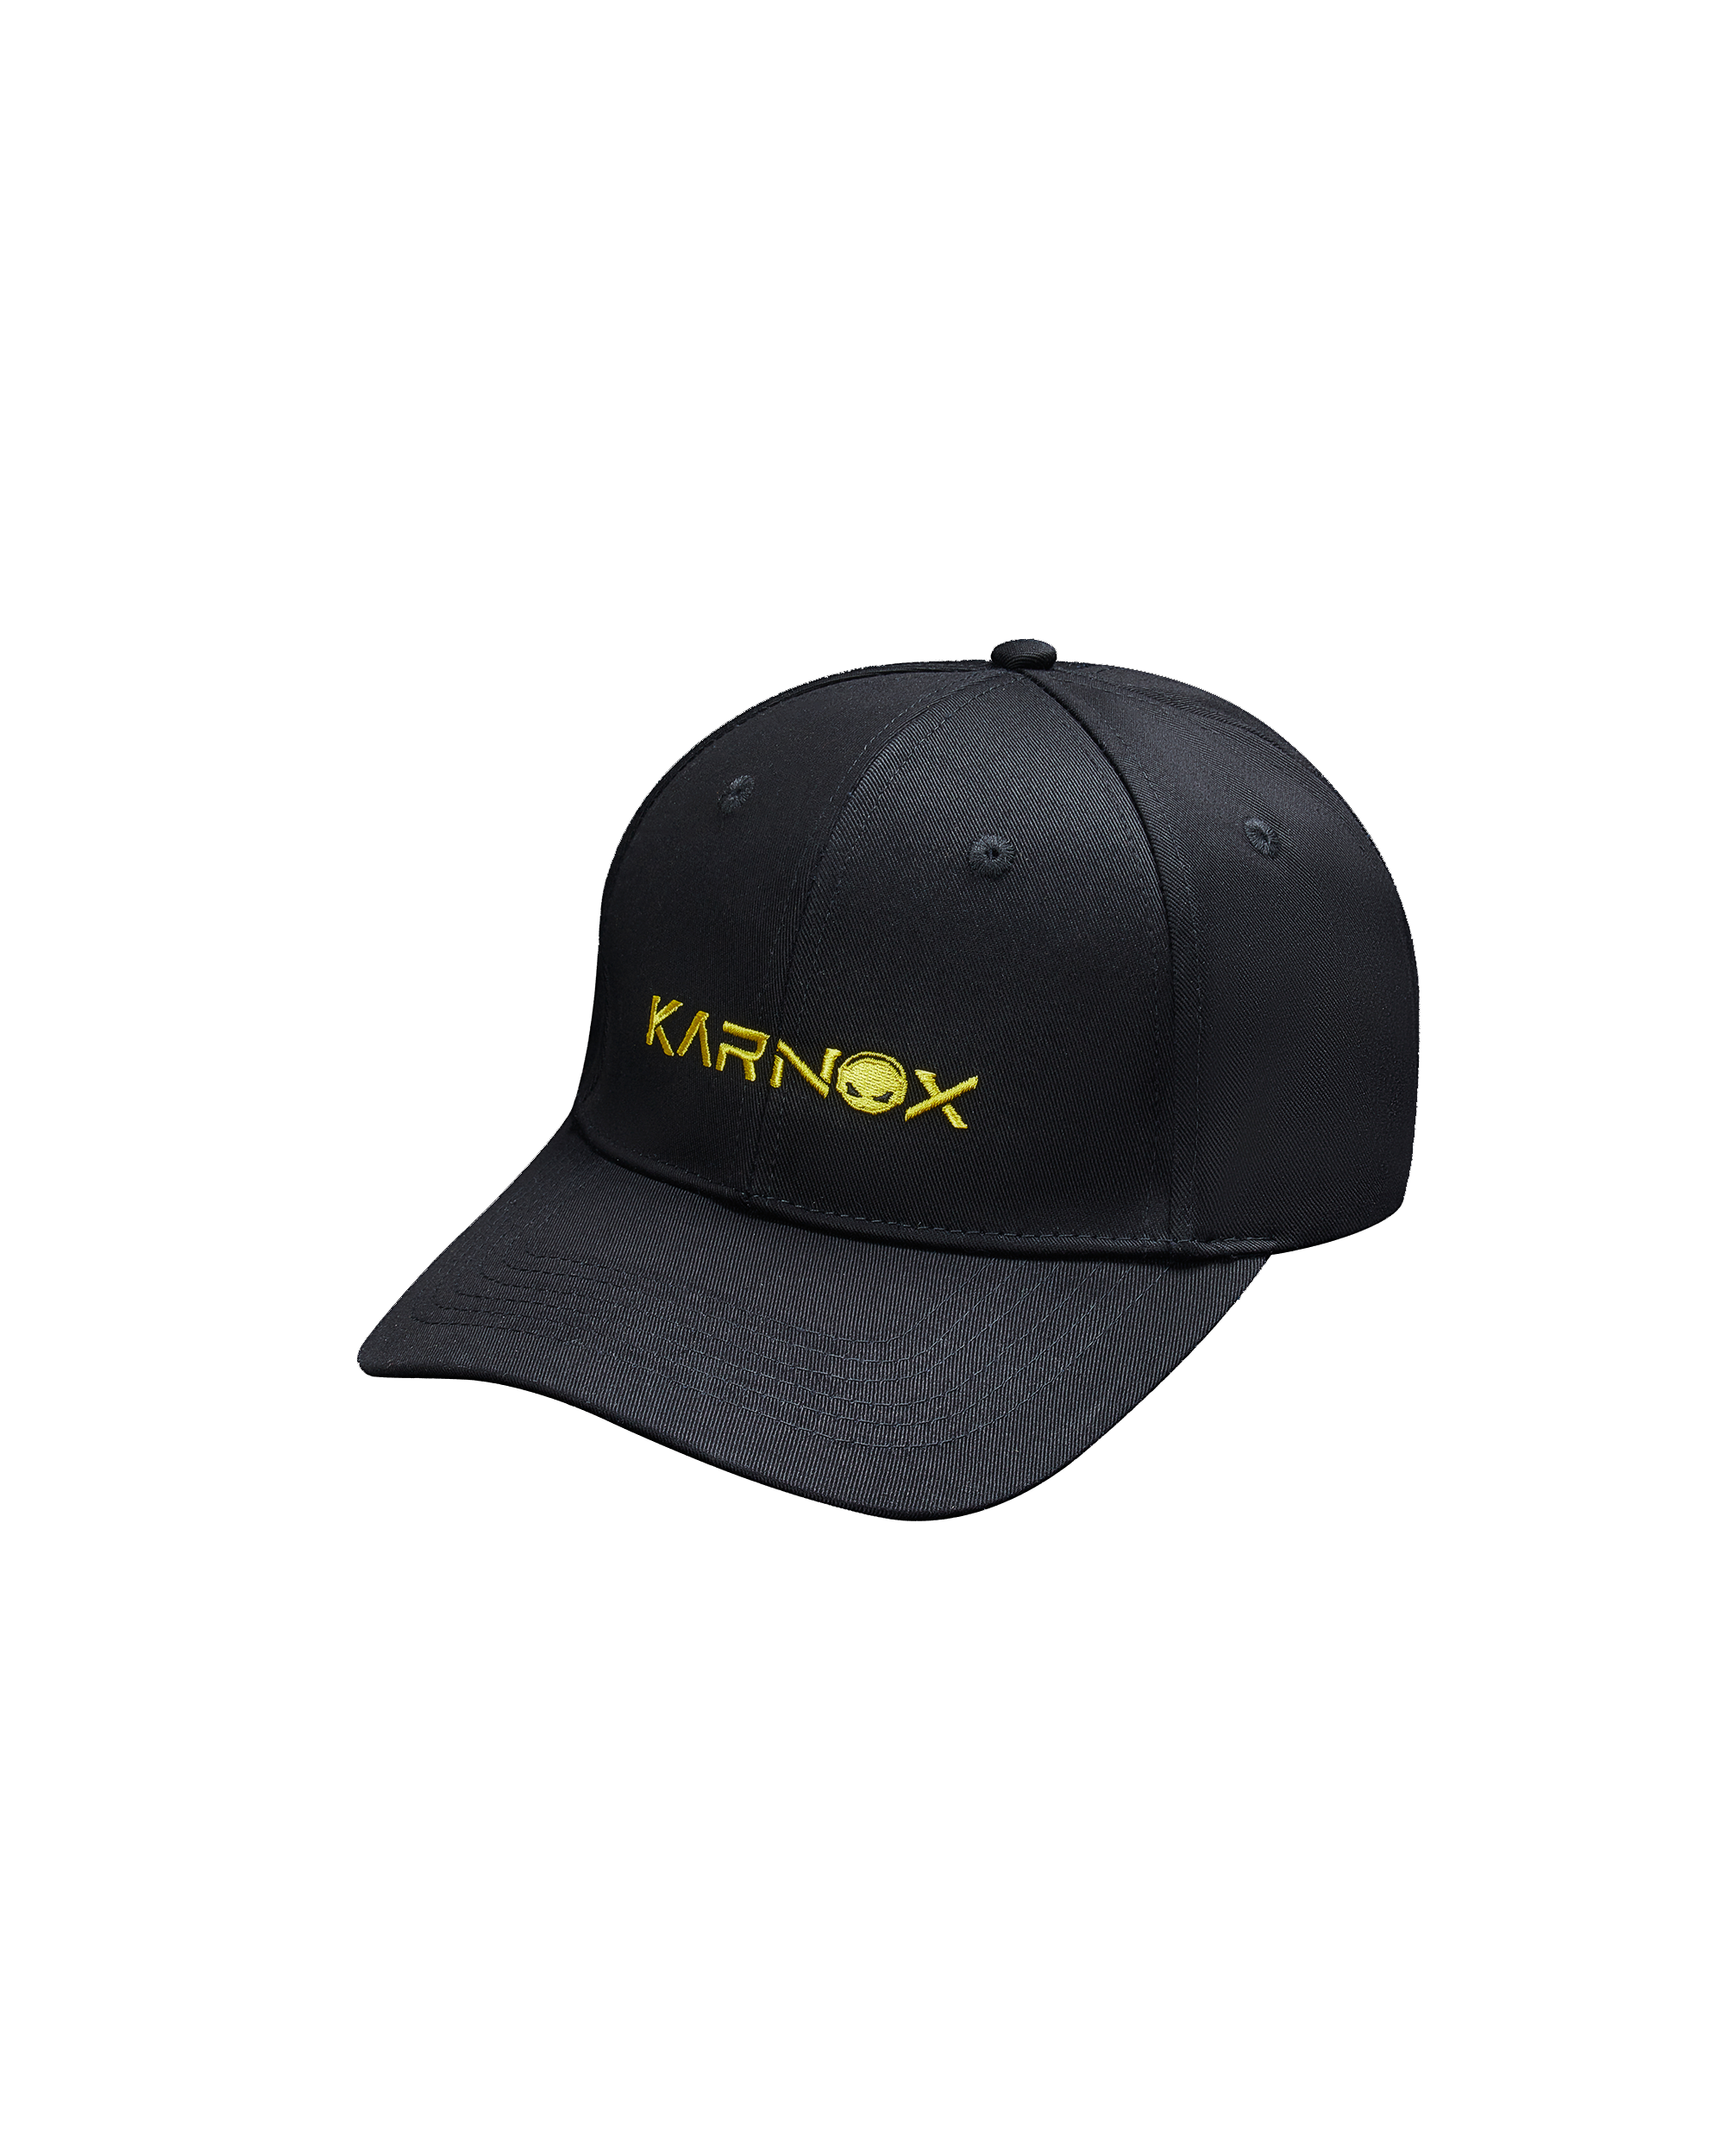 Karnox Peaked cap